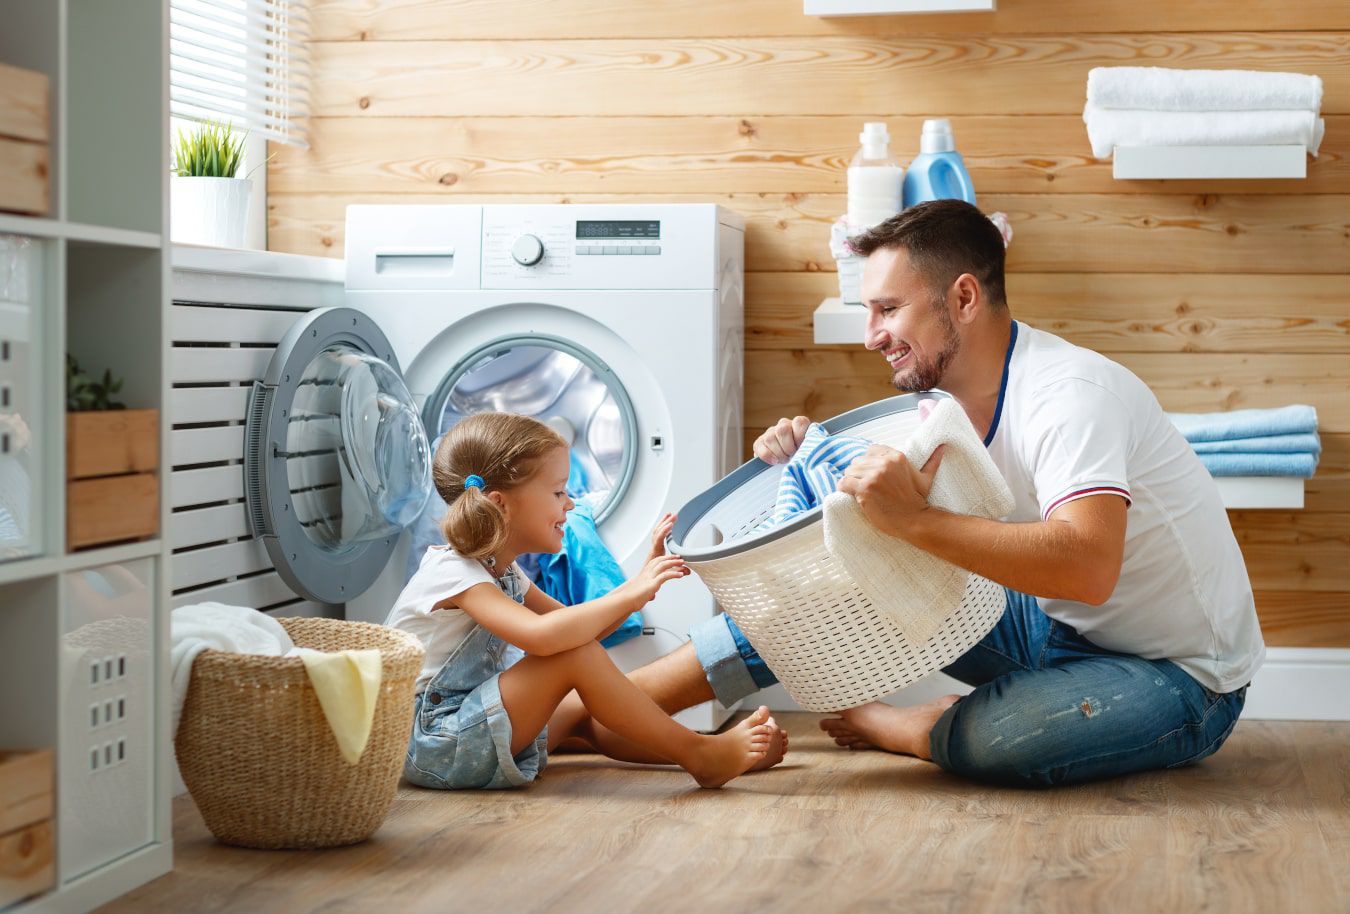 Roześmiany tata pokazuje córce kosz z praniem, razem doskonale się bawią przy pralce